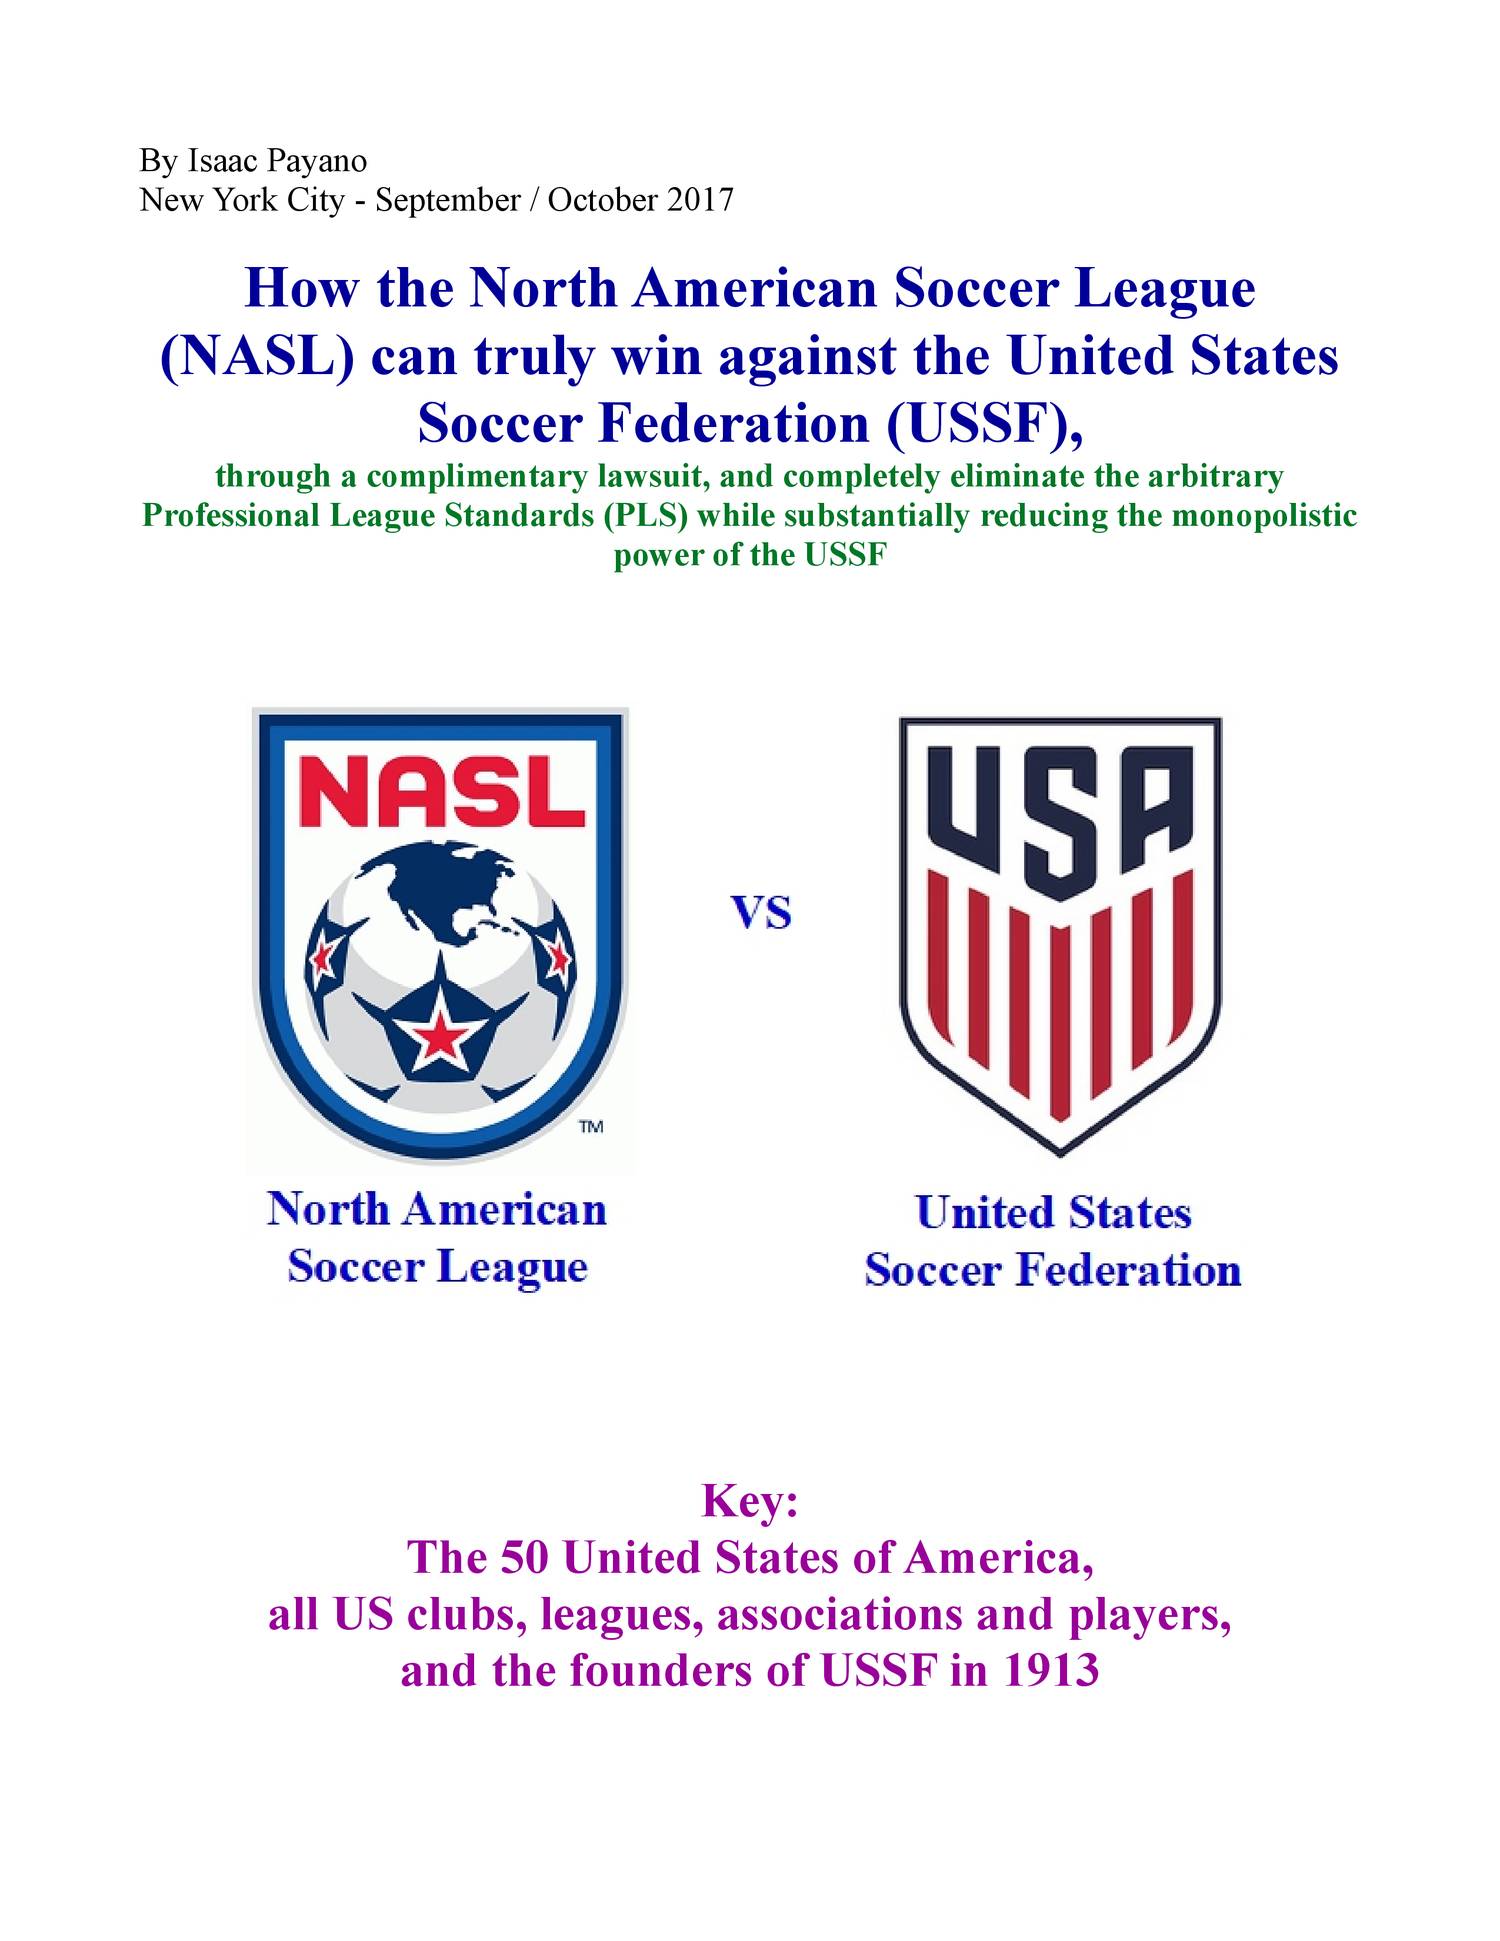 north american soccer league teams